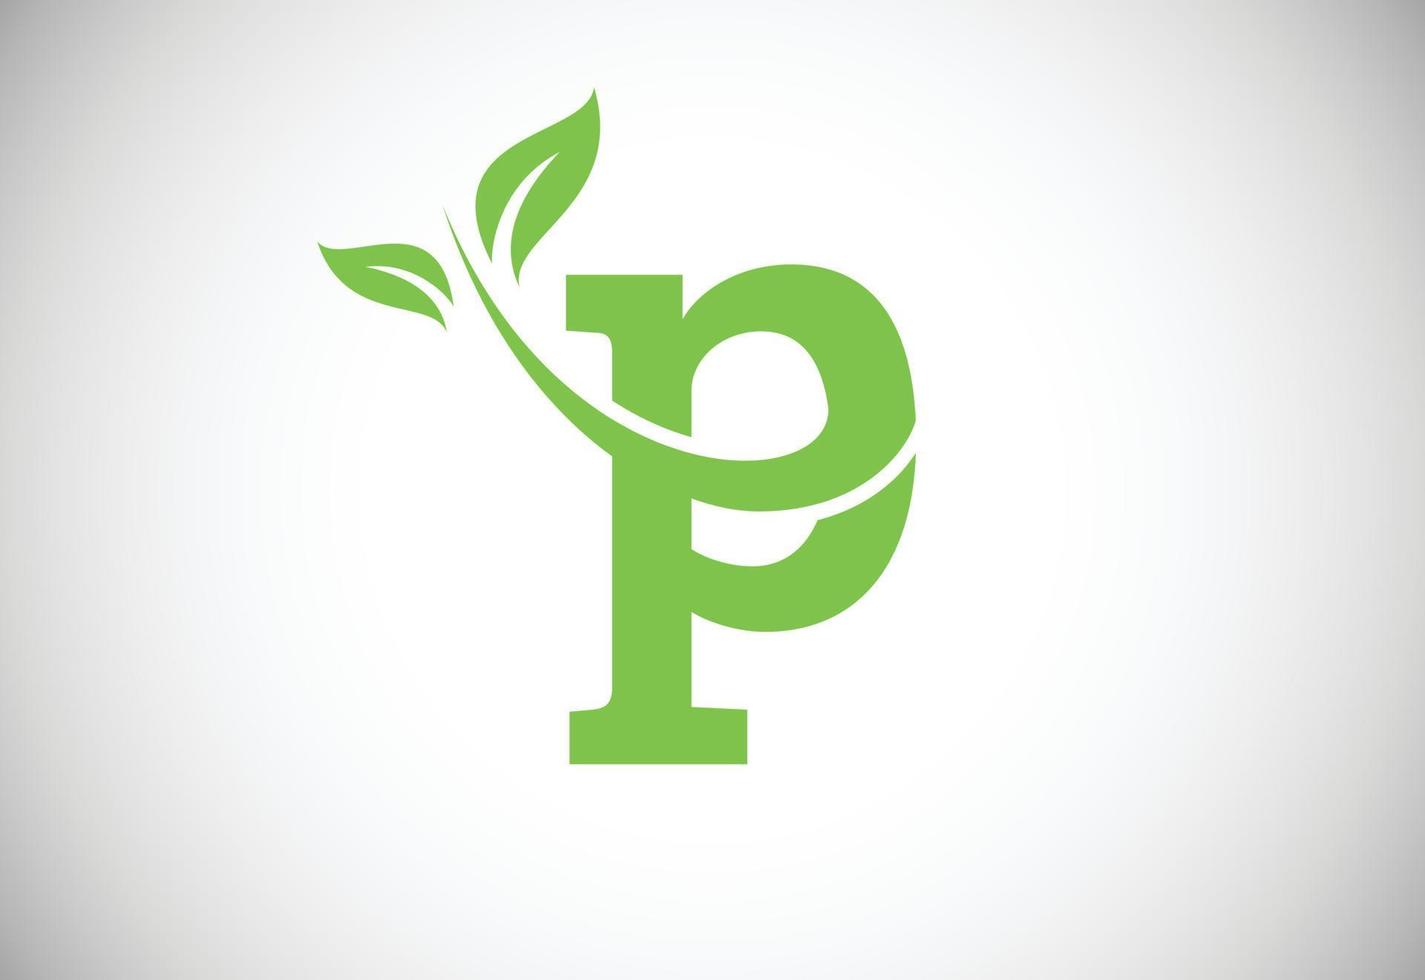 iniziale lettera p e foglia logo. eco-friendly logo concetto. moderno vettore logo per ecologico attività commerciale e azienda identità